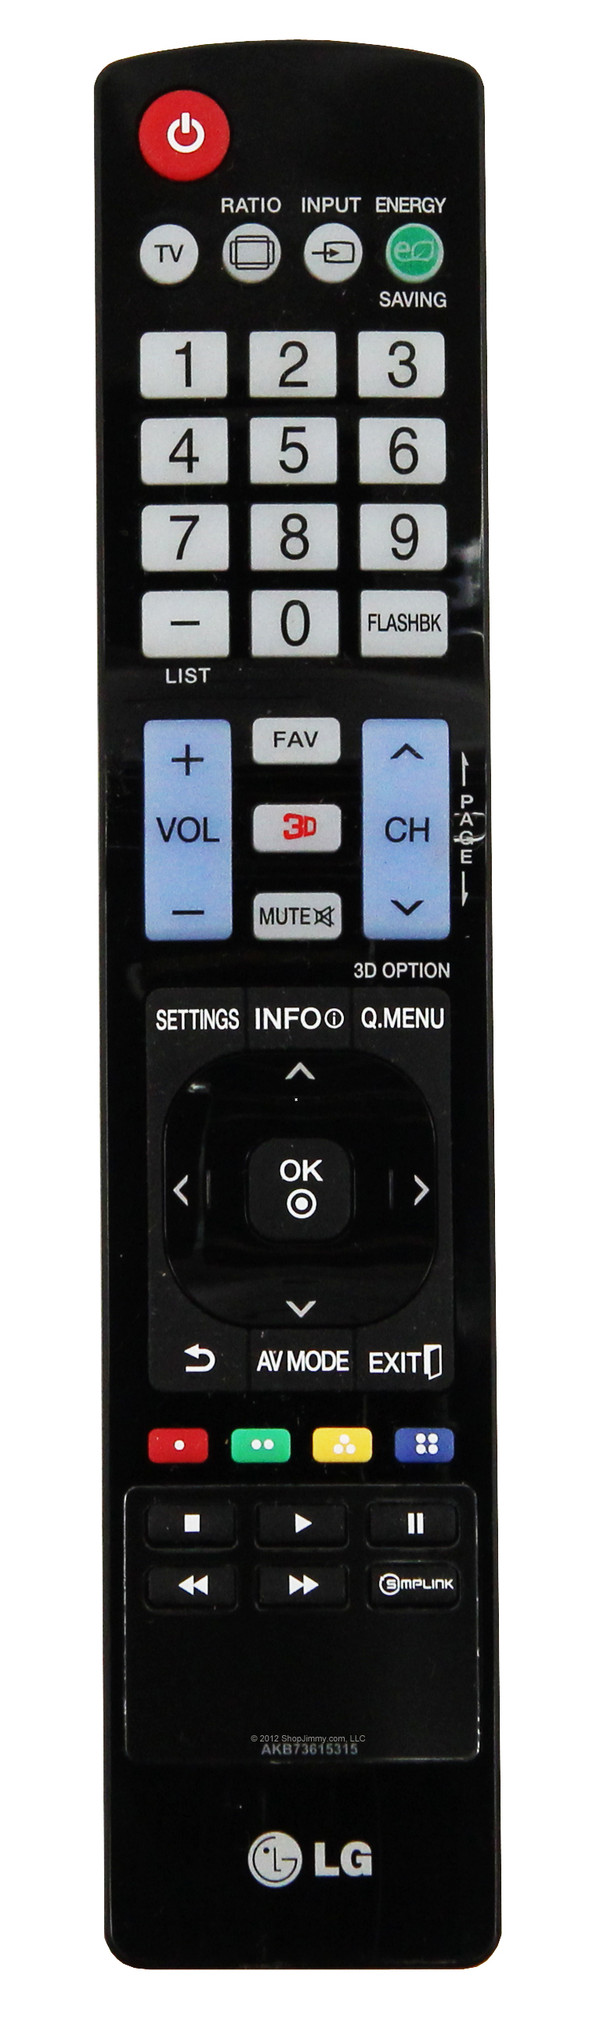 LG AKB73615315 Remote Control